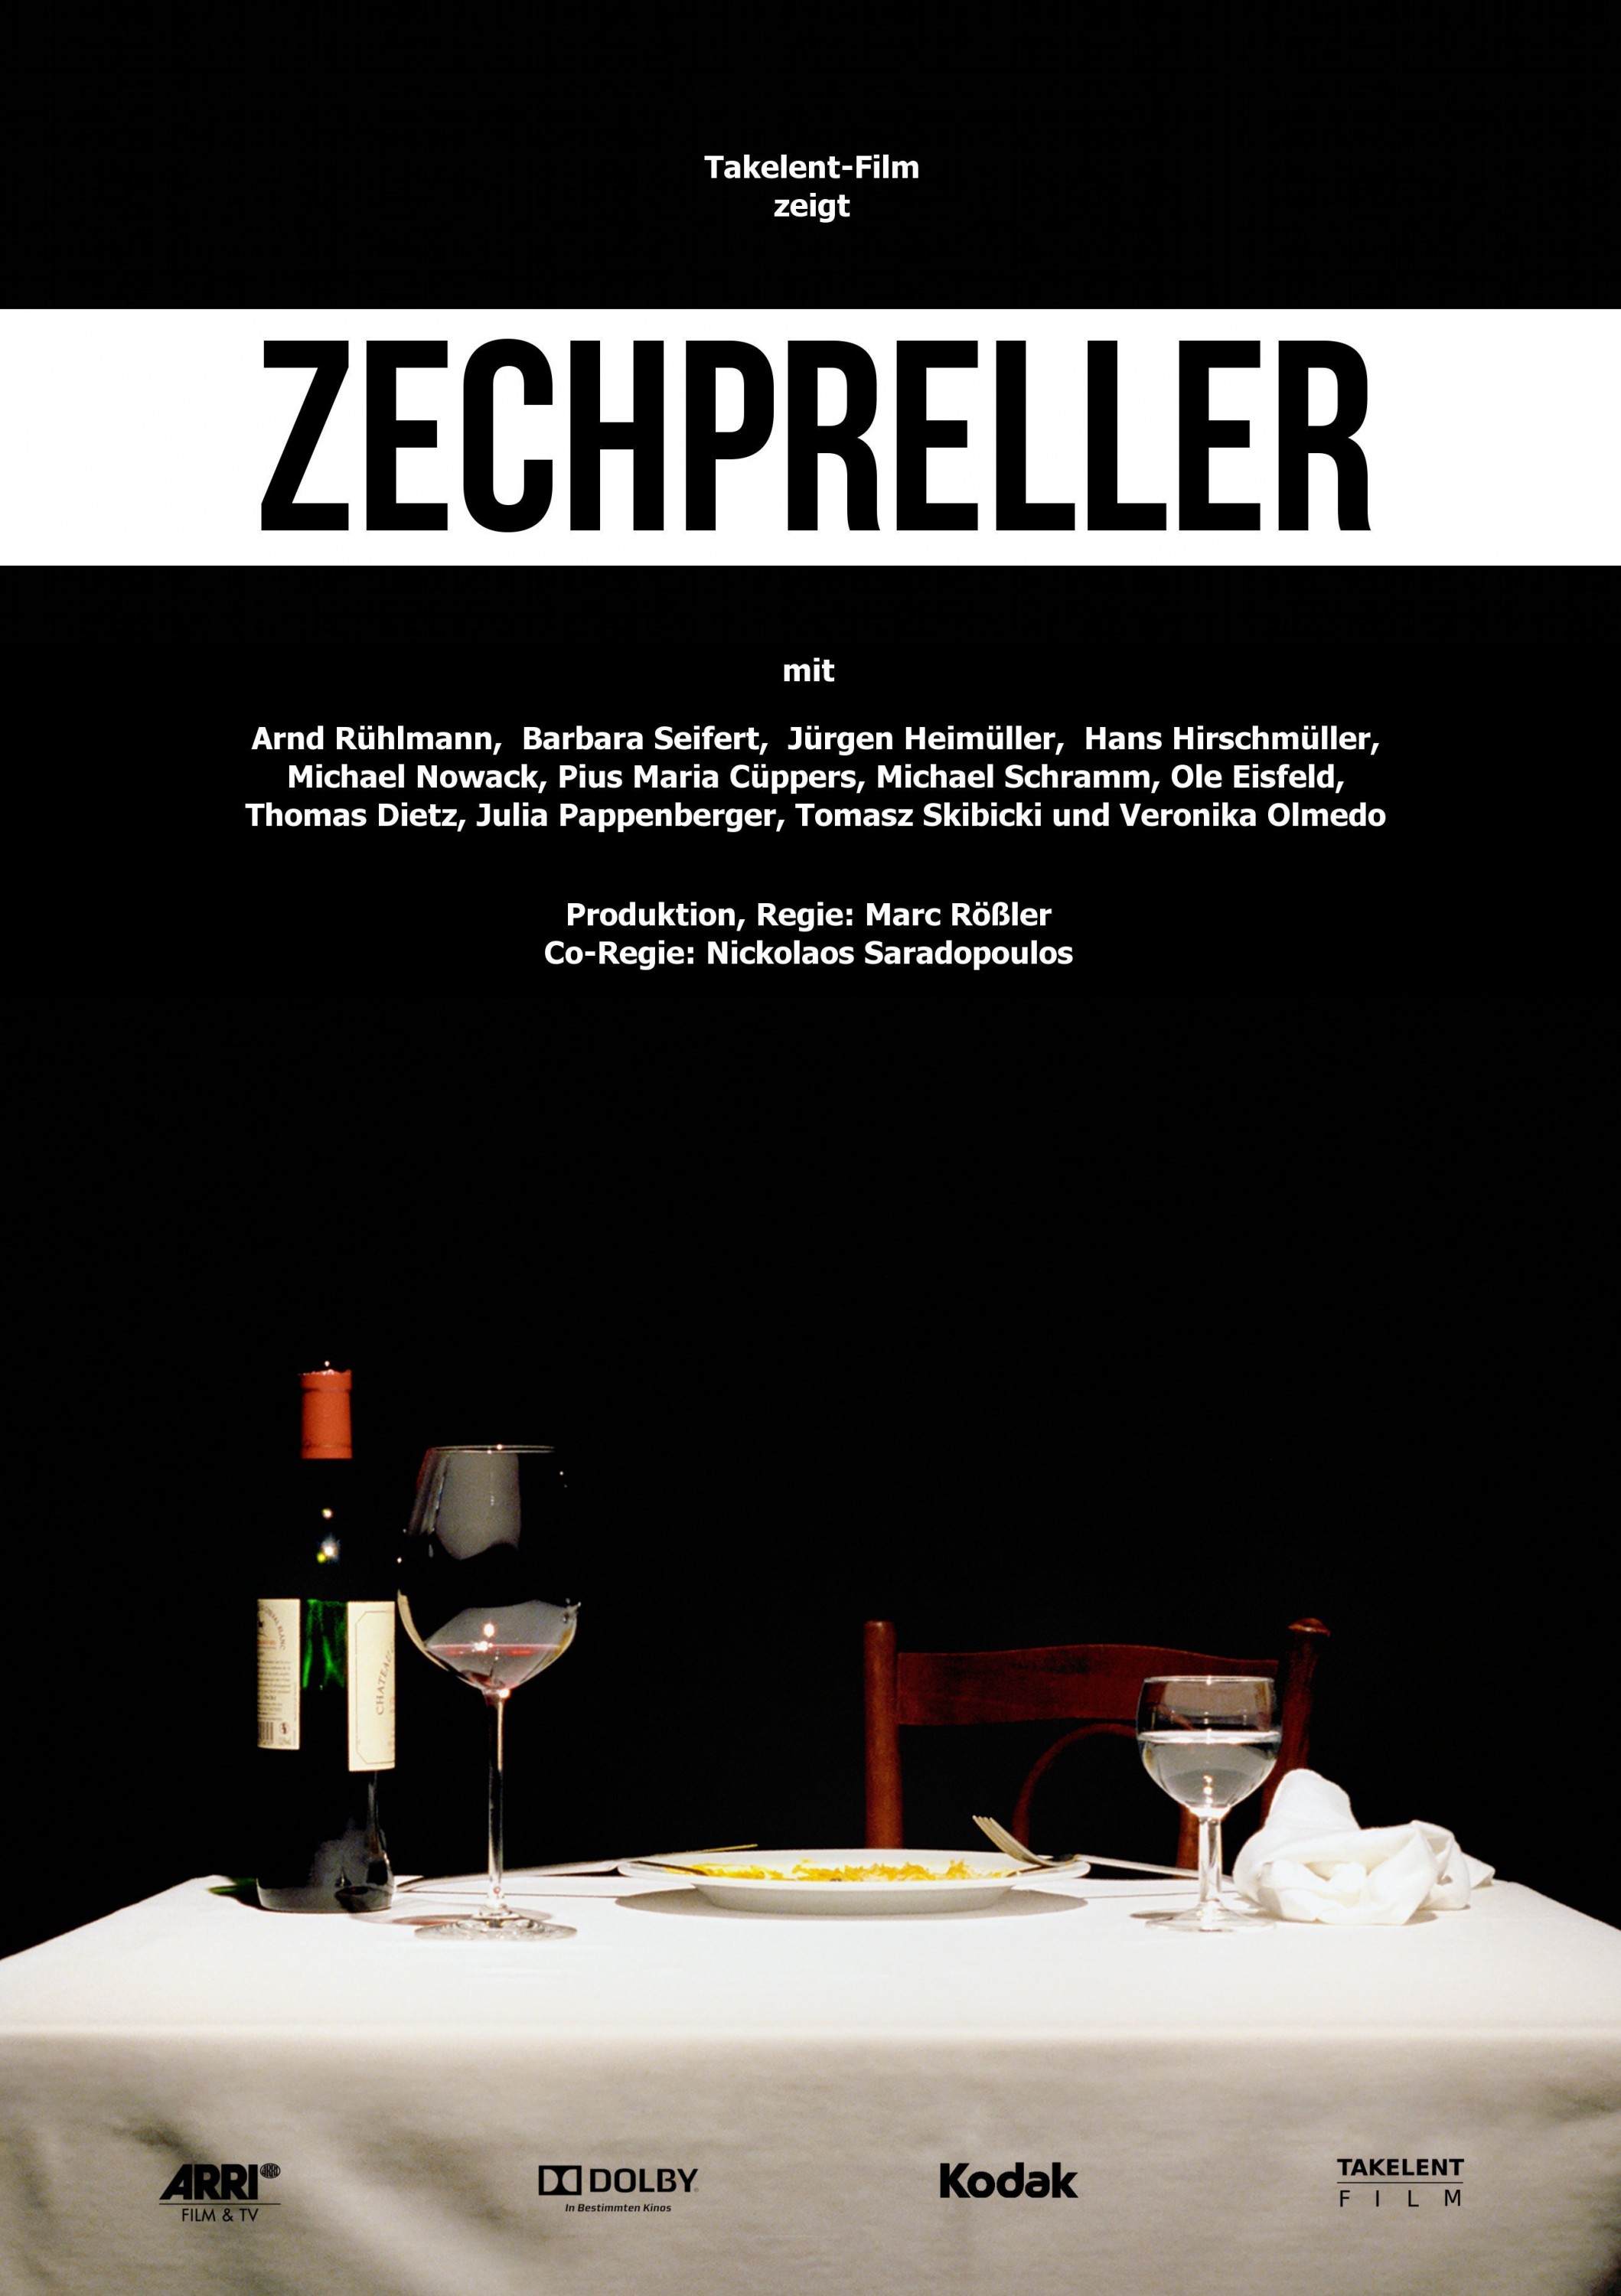 Mega Sized Movie Poster Image for Zechpreller